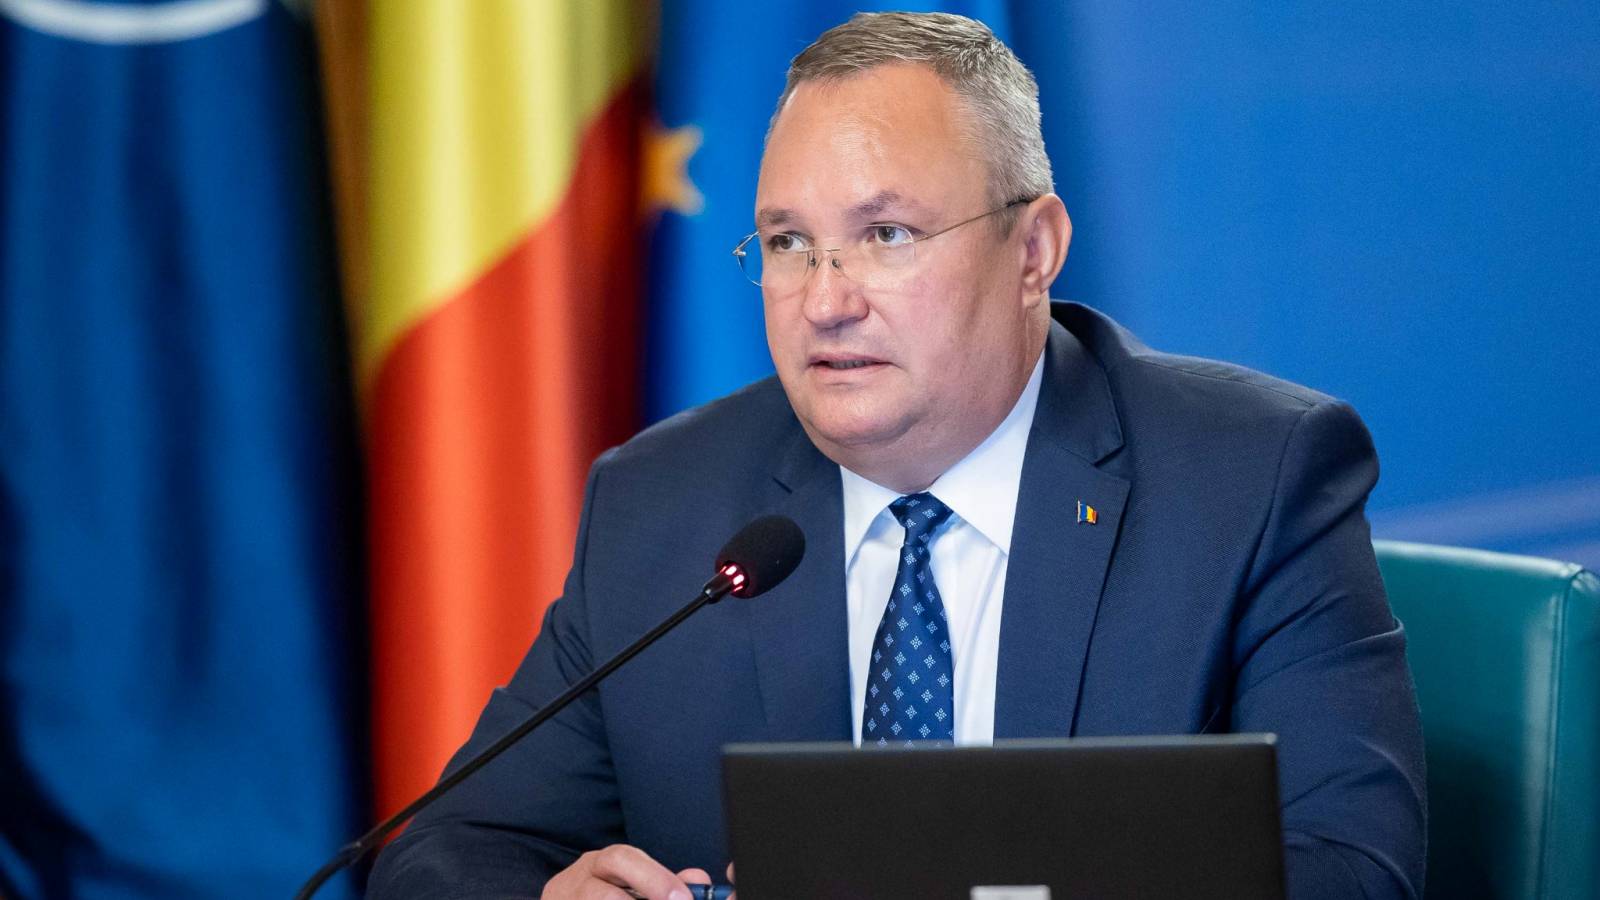 Nicolae Ciuca discutió la ampliación de la asociación estratégica con el Primer Ministro de Moldavia